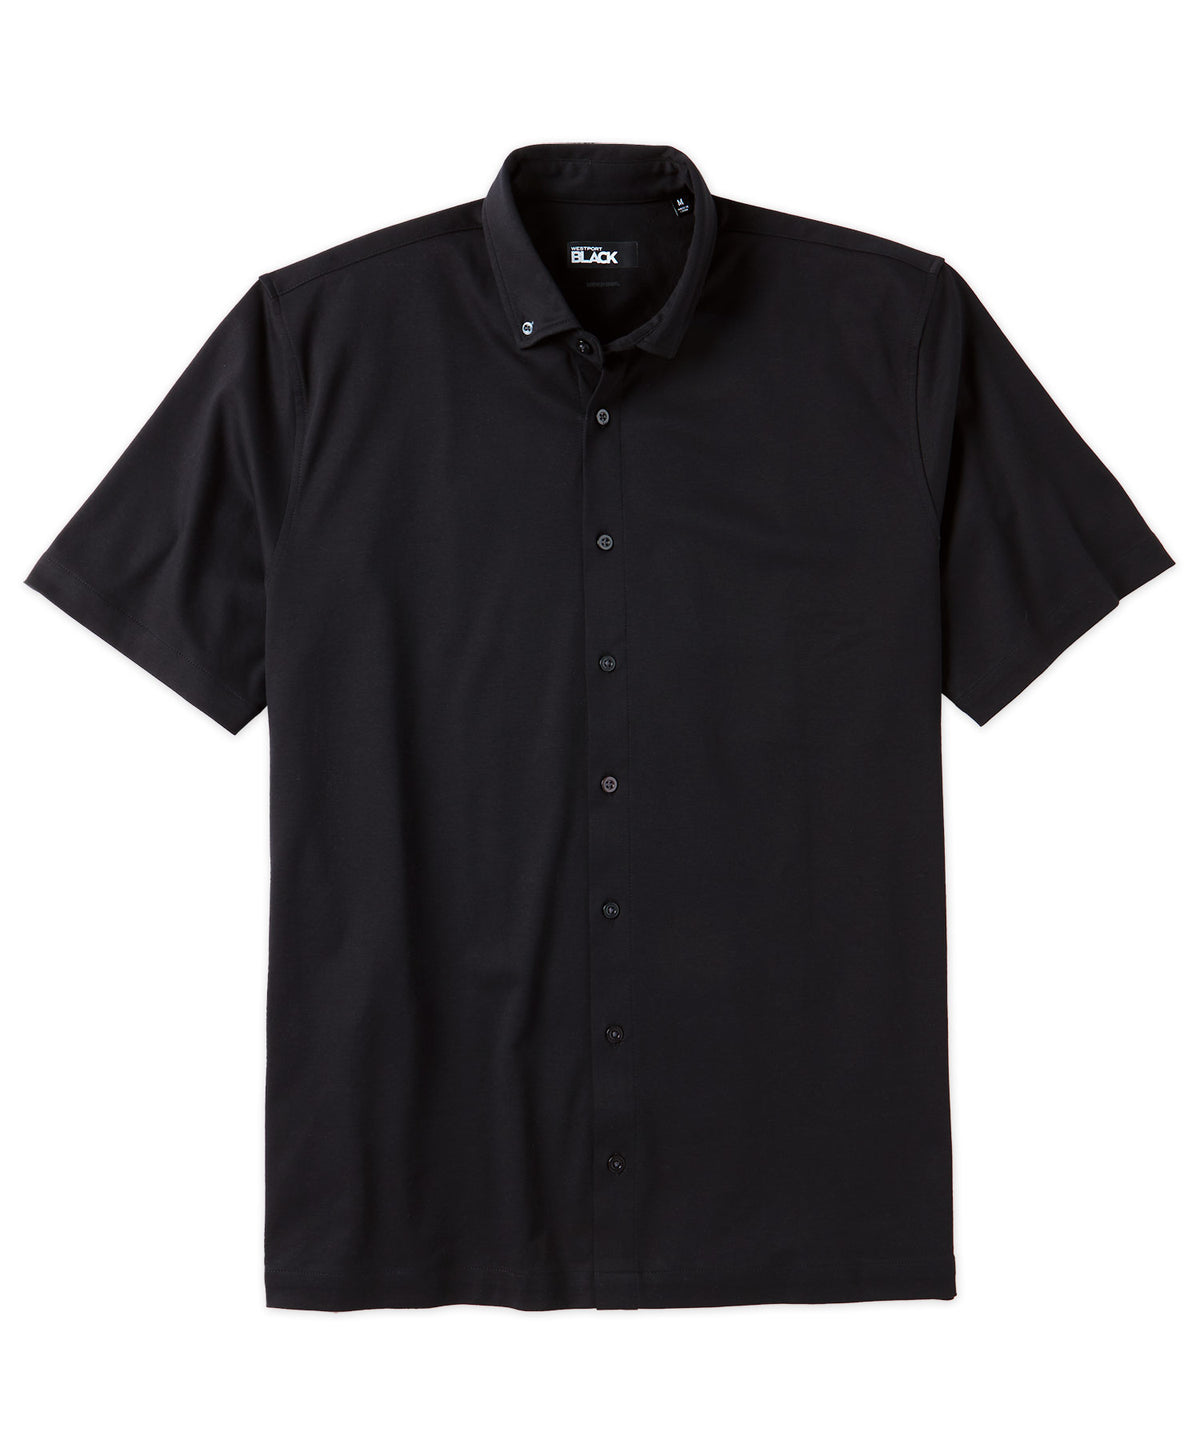 Westport Black Short Sleeve Button Front Sport Shirt, Men's Big & Tall